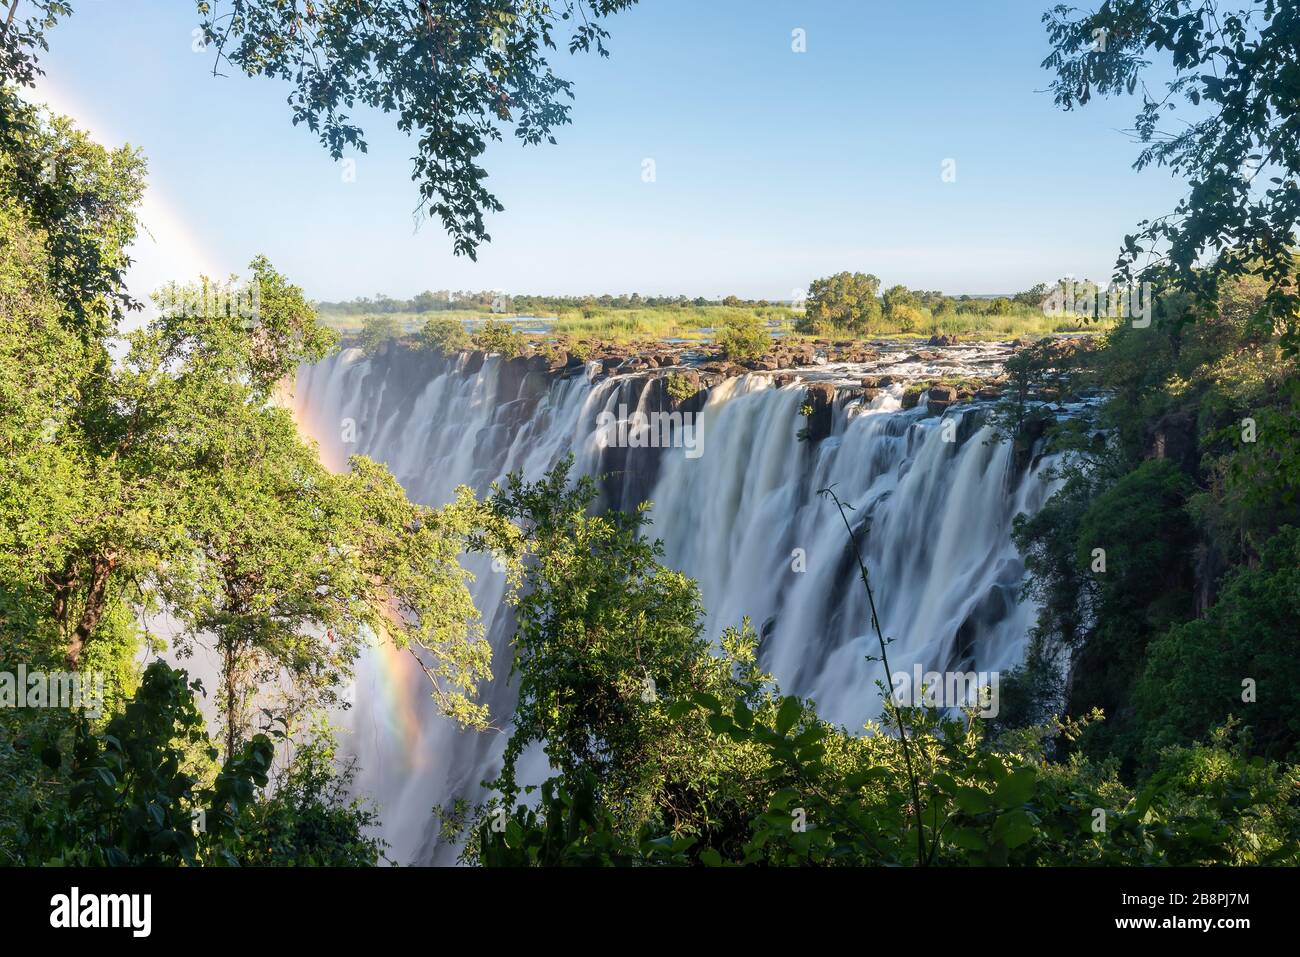 Cataratas Victoria, situadas en la frontera de Zimbabwe y Zambia. Arco iris y largo efecto de exposición del agua que fluye con vegetación y rocas. Foto de stock